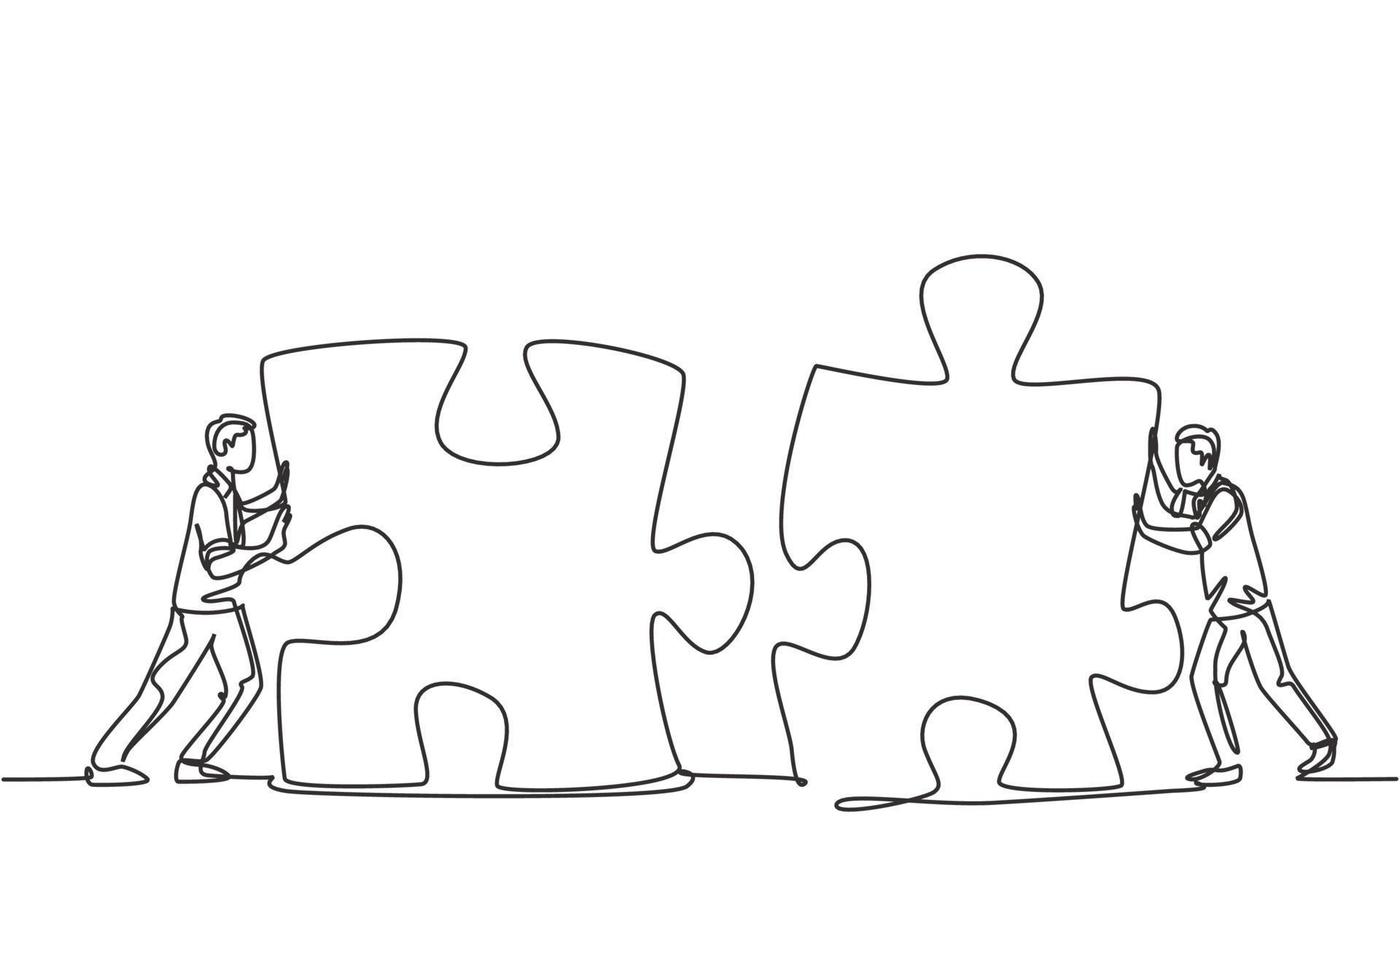 een doorlopende lijntekening van twee jonge zakenlieden duwen puzzelstukjes om ze te verenigen als teken om zakelijke samenwerking te starten. moderne eenheid teamwork concept enkele lijn tekenen ontwerp vectorillustratie vector